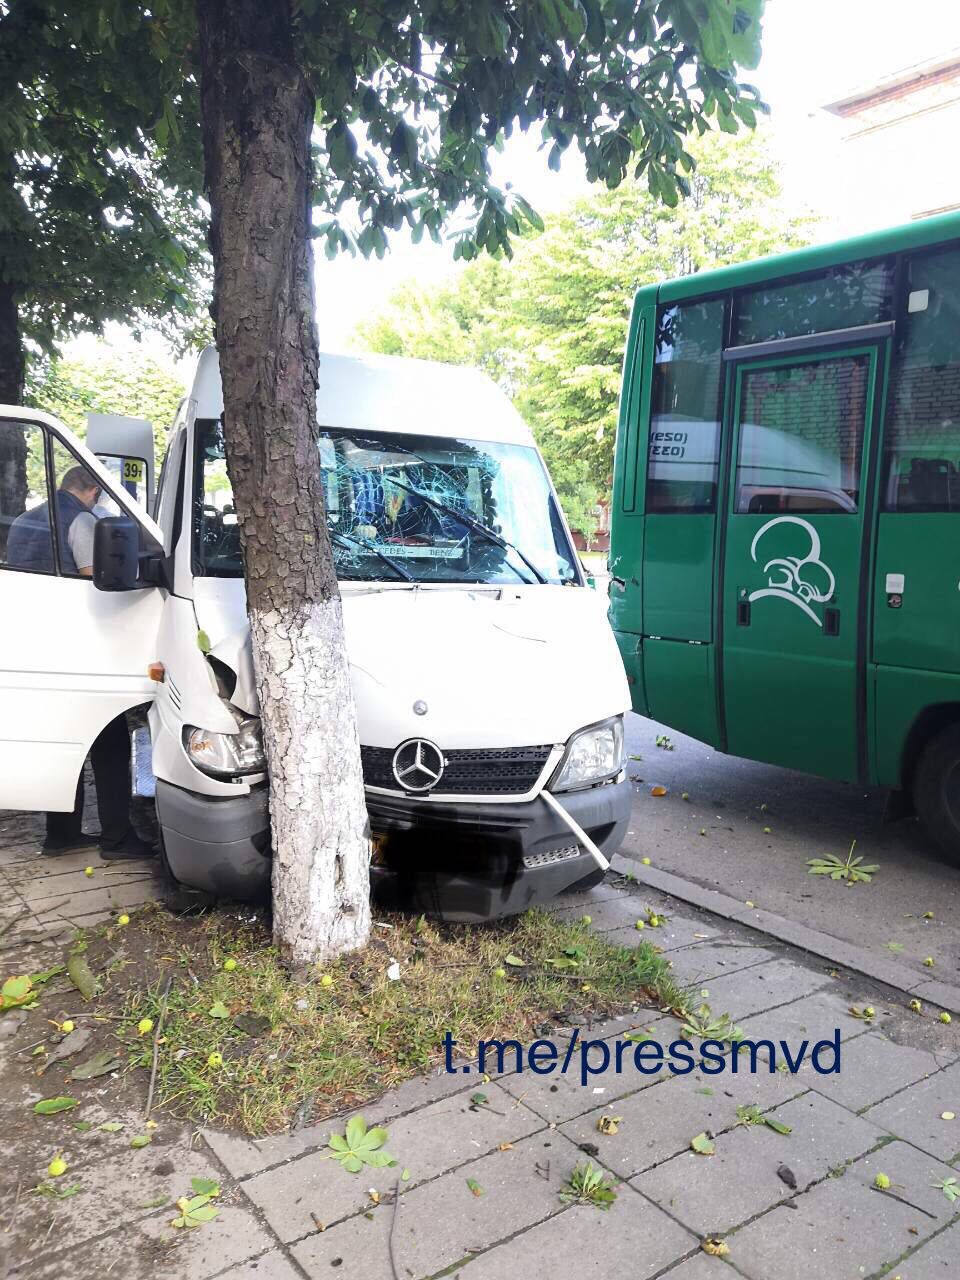 Пять пассажиров маршрутки пострадали в ДТП в Барановичах